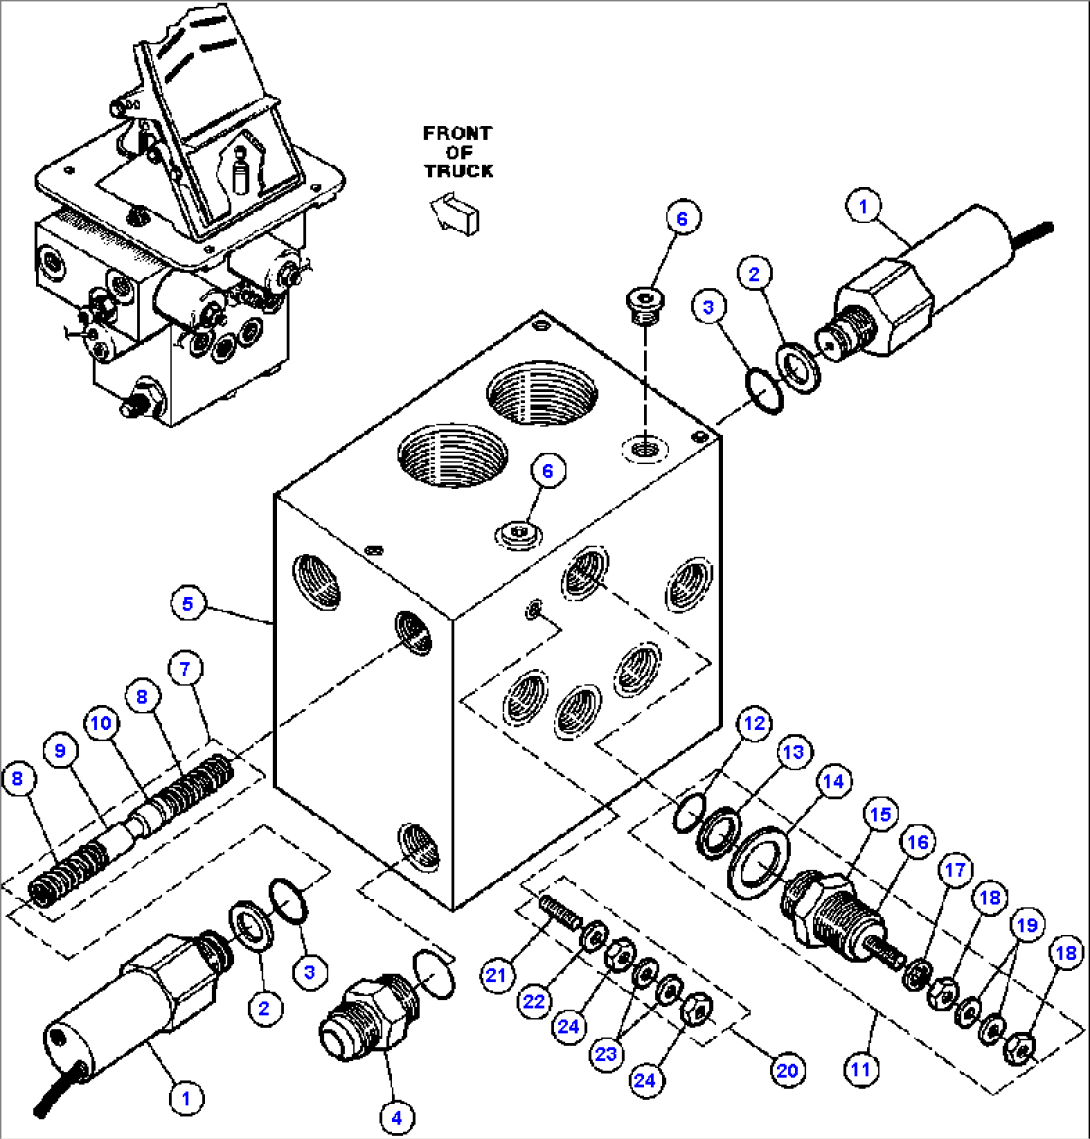 DUAL CONTROLLER SUB-ASSM - 2 (VE1249)